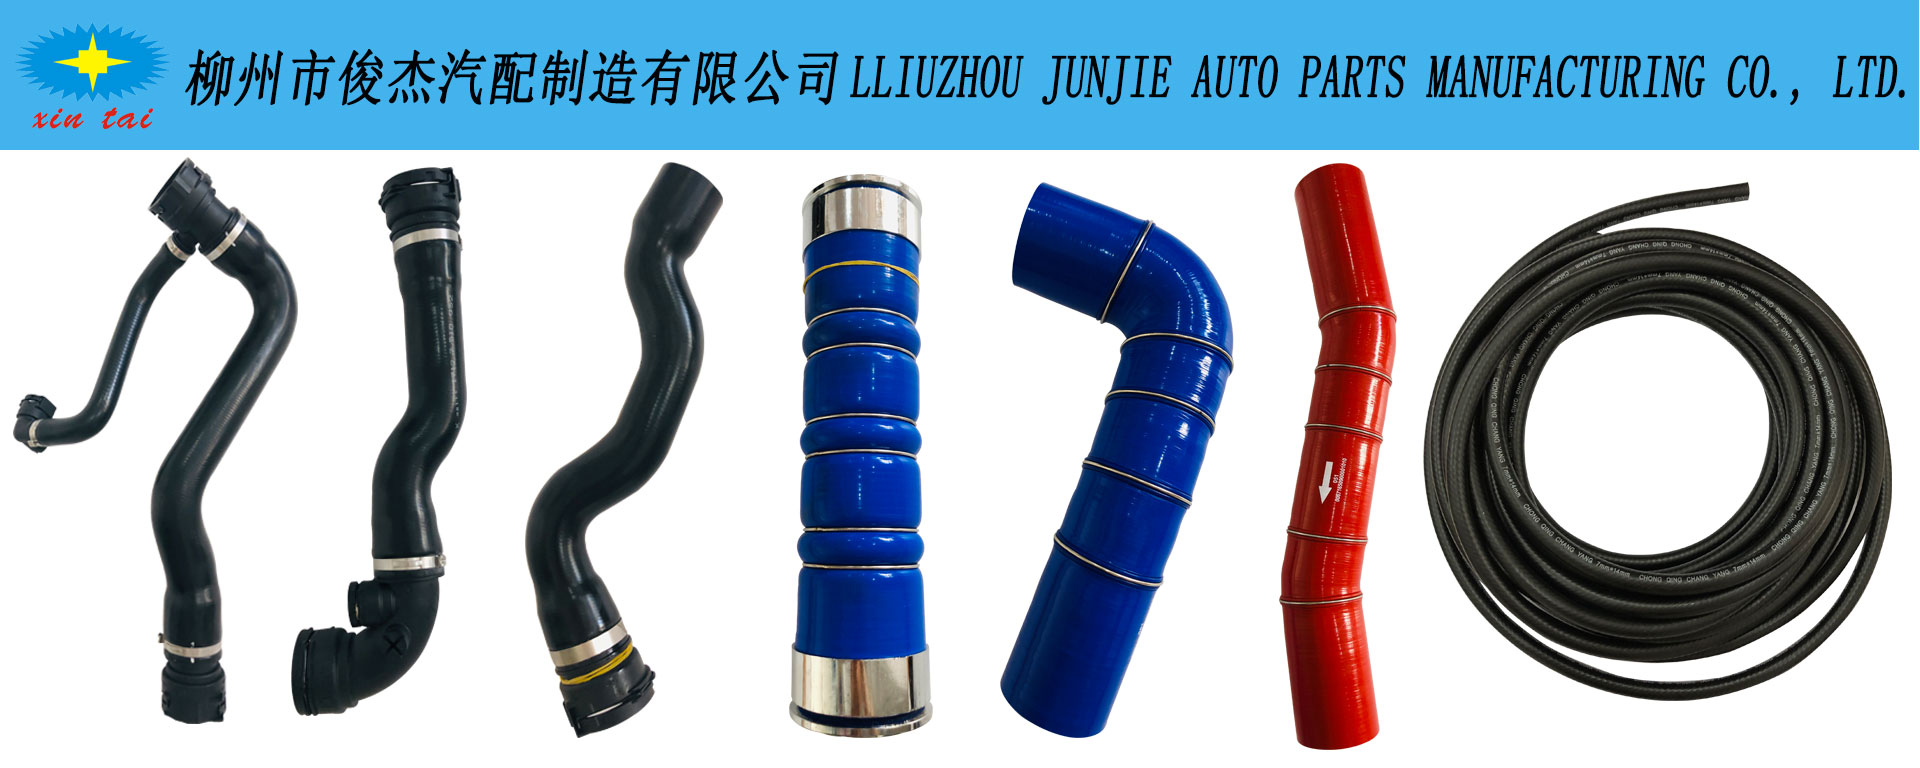 Liuzhou Junjie Auto Manufacture Co.,Ltd